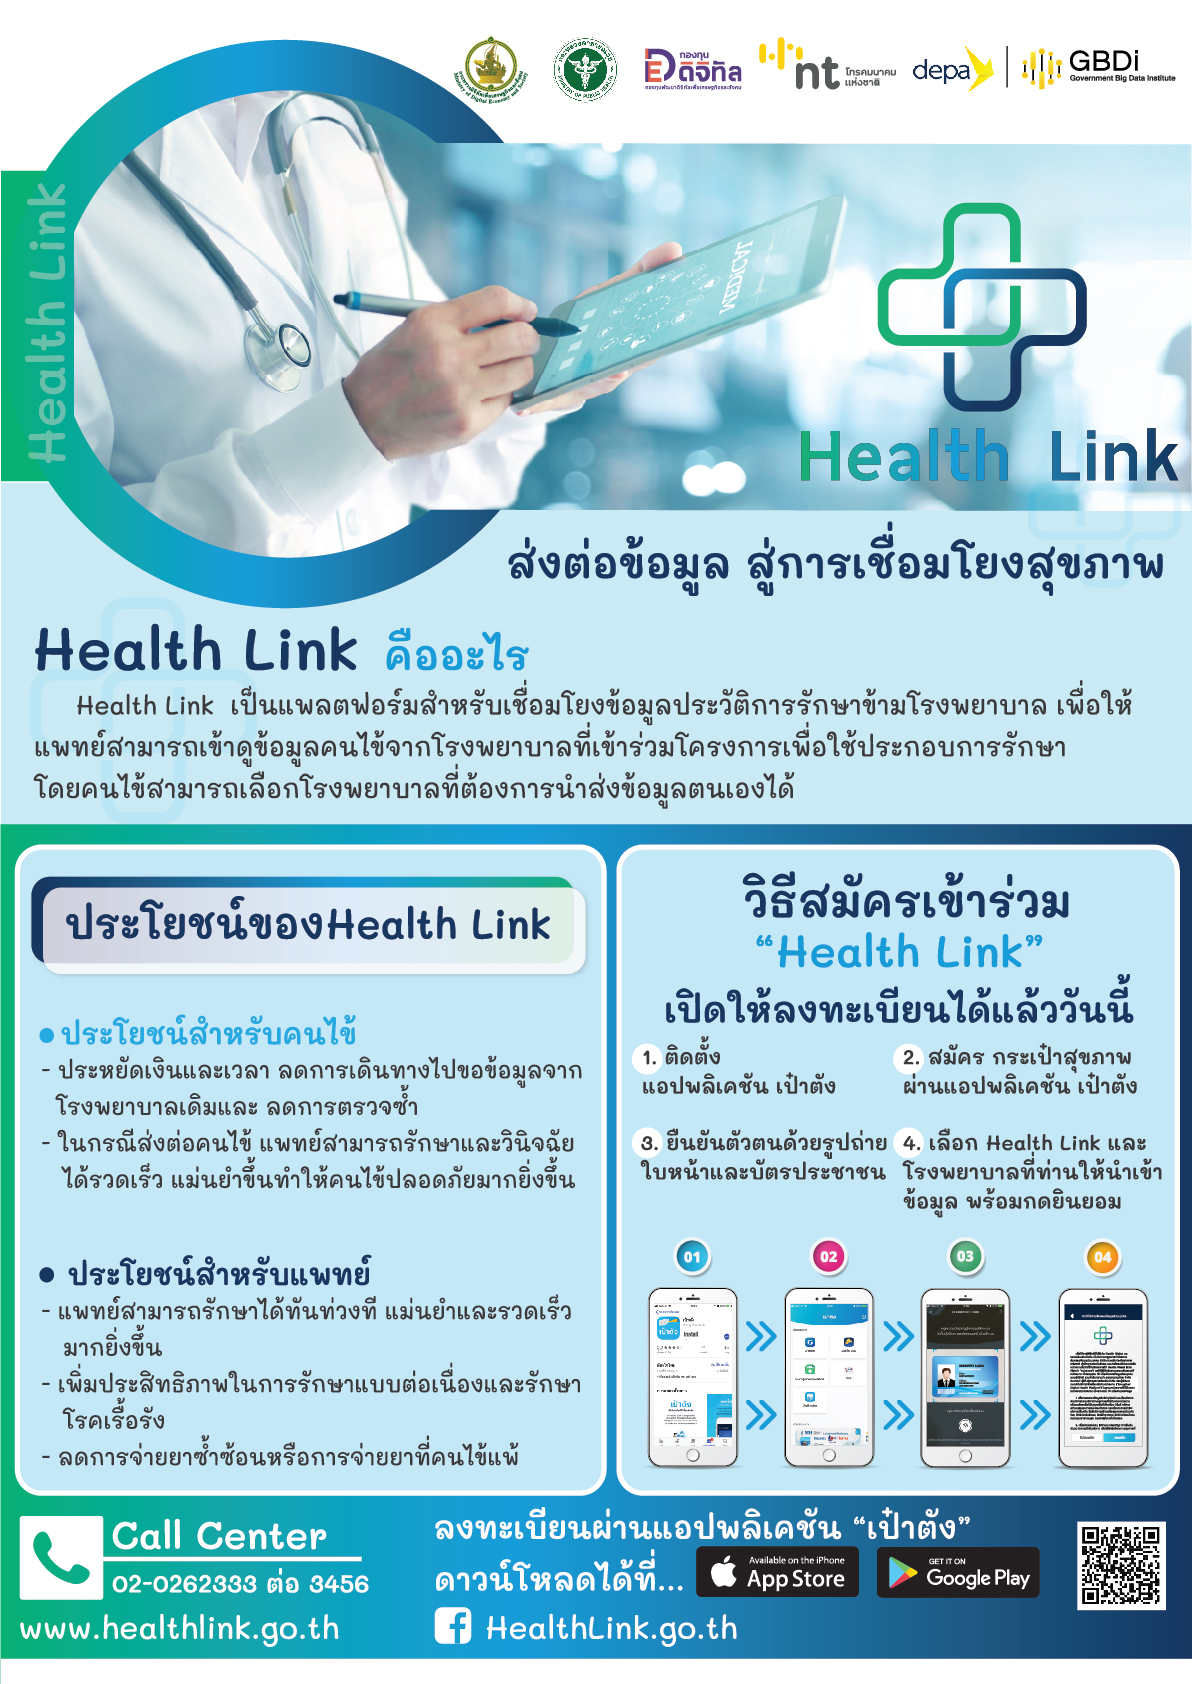 Health Link ส่งต่อข้อมูล สู่การเชื่อมโยงสุขภาพ